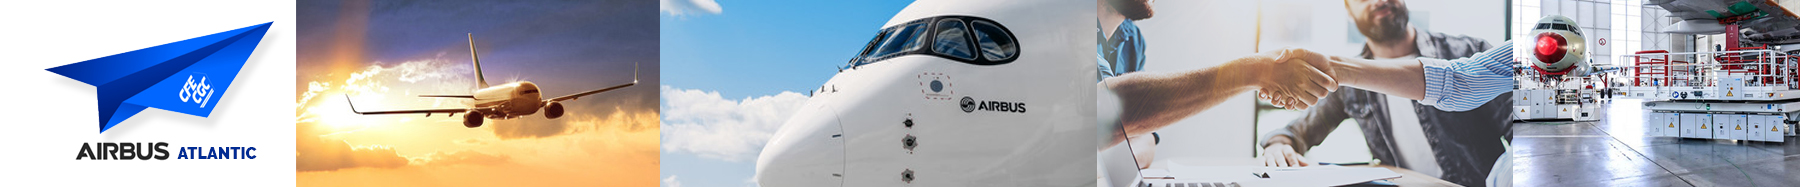 CFE CGC Airbus Atlantic